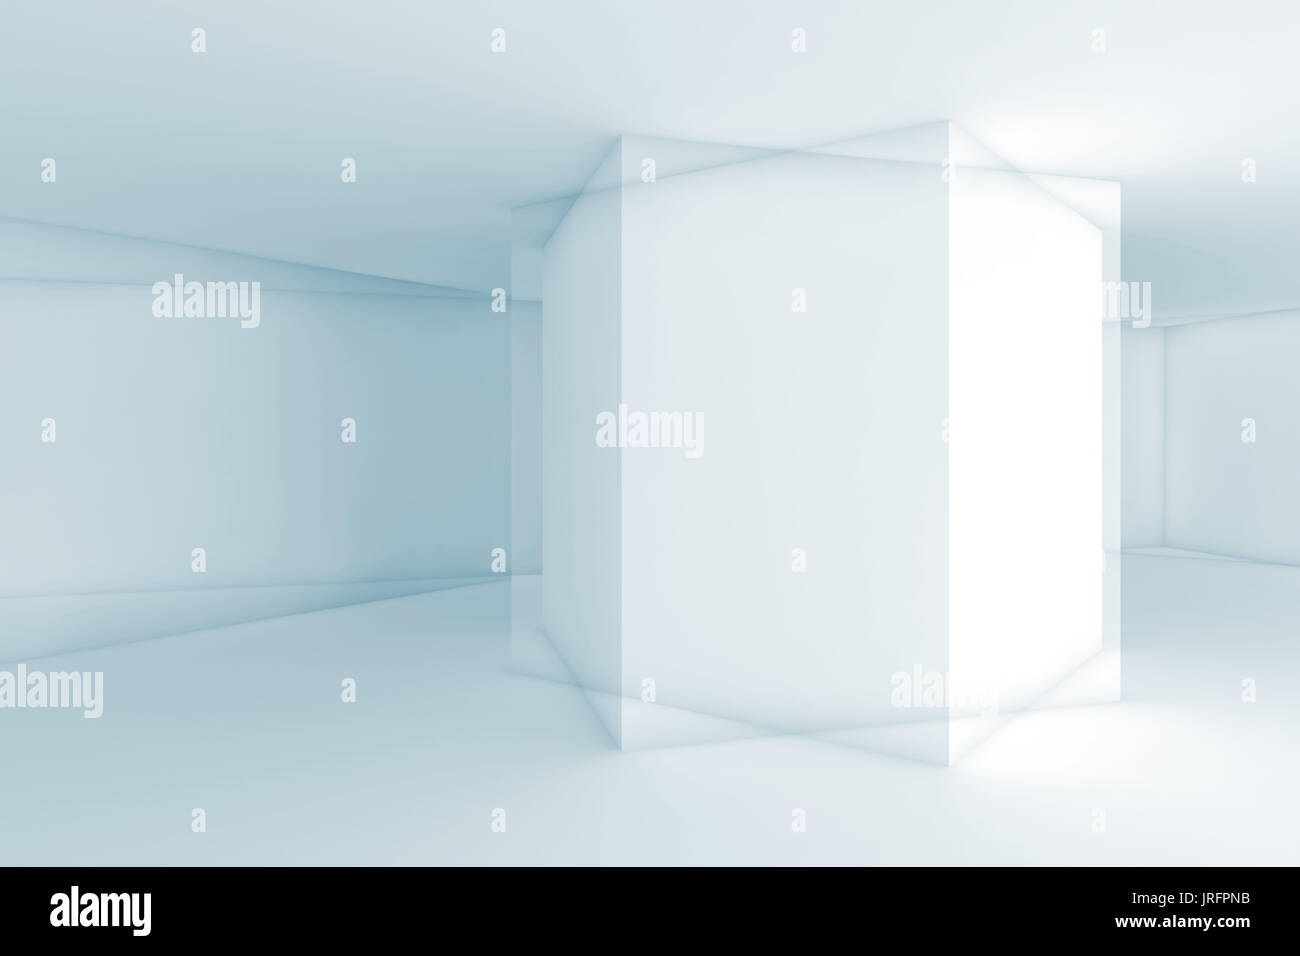 Résumé Contexte numérique avec recoupé des formes géométriques, 3d illustration, double exposition, d'effet filtre tonal bleu Banque D'Images